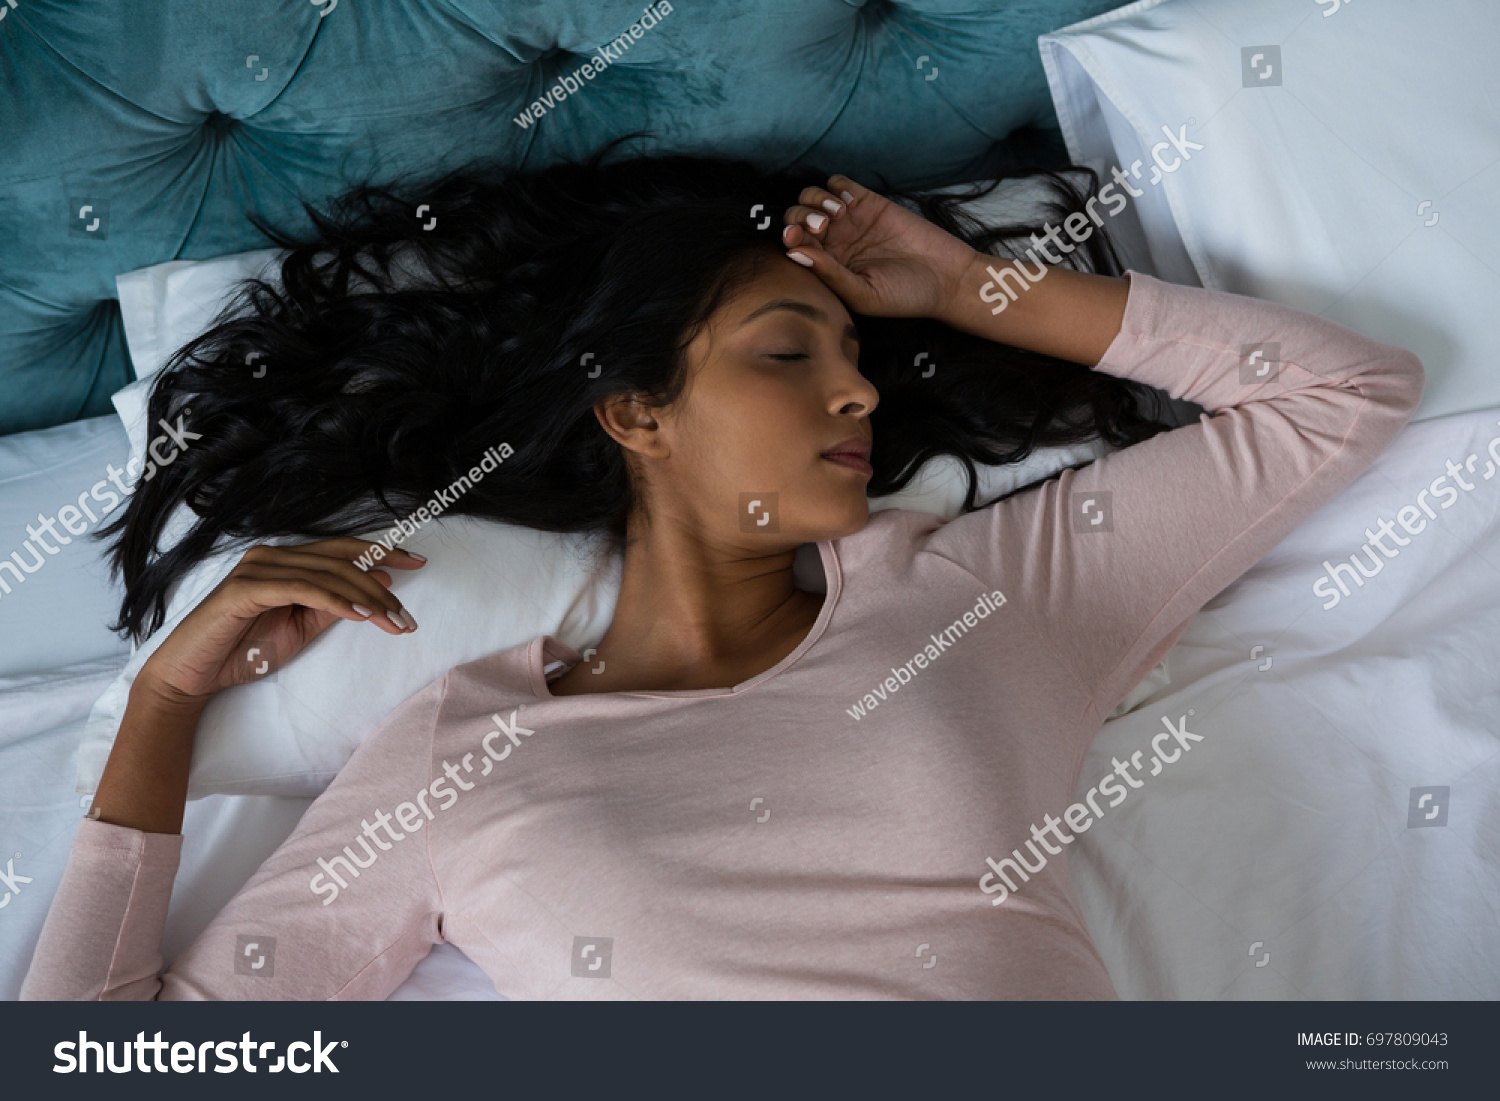 Сильные стоны девушки. Арабские женщины в постели. Women sleeping Bed. Girl sleeping with wet hair.